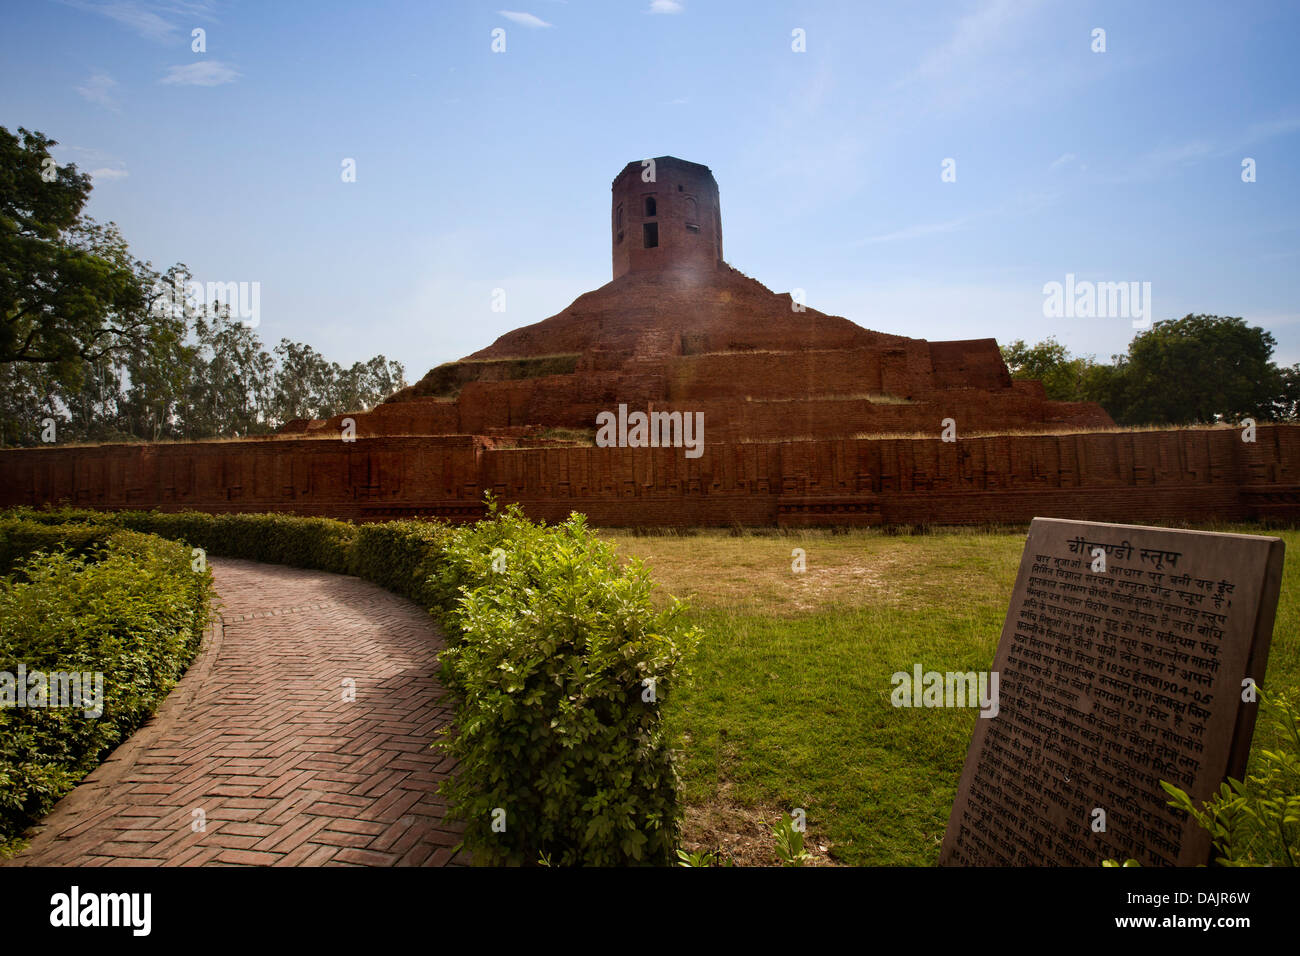 Ruins of stupa, Chaukhandi Stupa, Sarnath, Varanasi, Uttar Pradesh, India Stock Photo